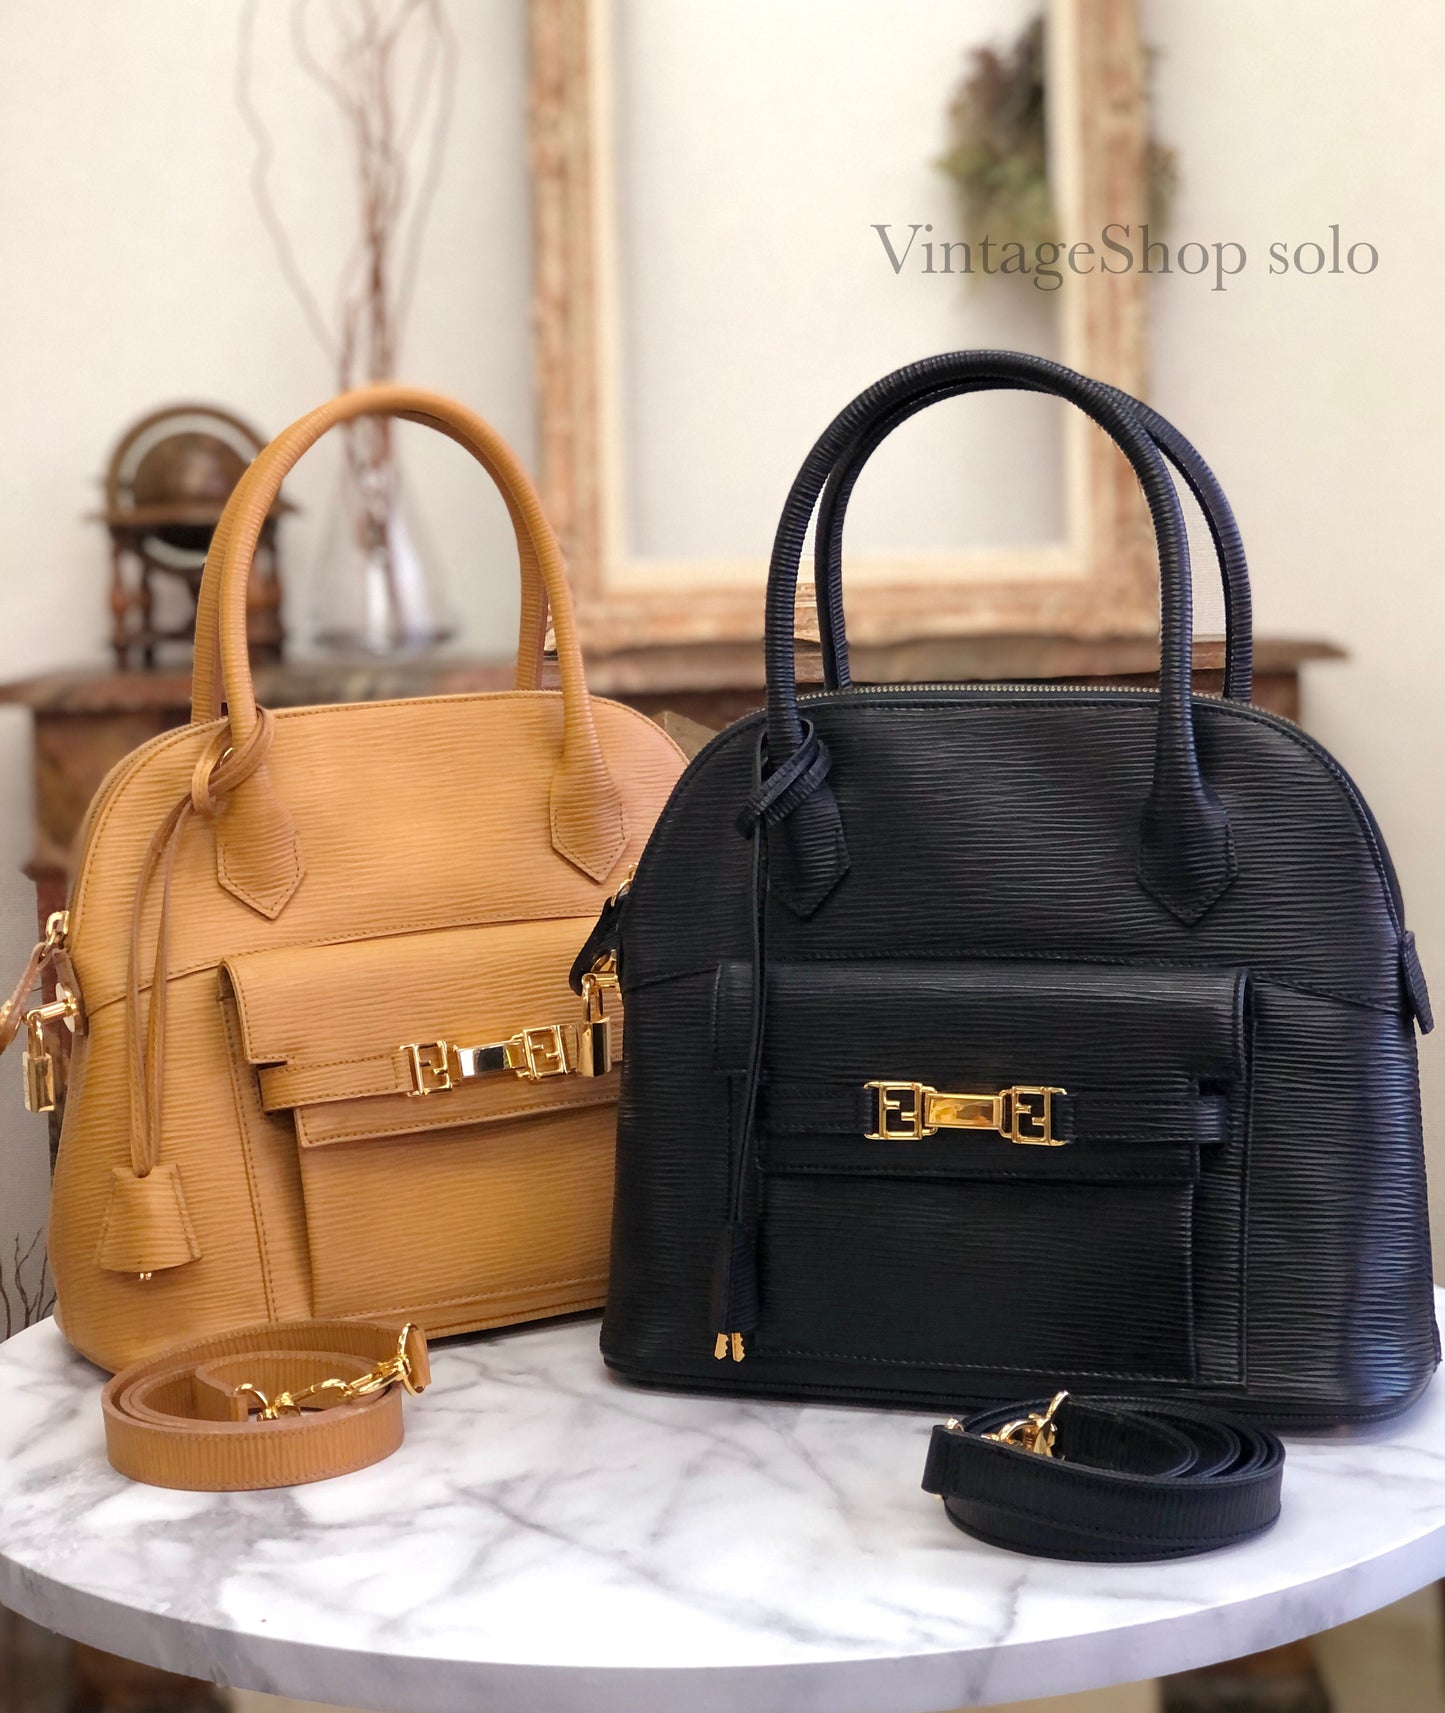 FENDI Leather Emboss 2Way Handbag Shoulder bag Black Vintage Old 6a3xwu